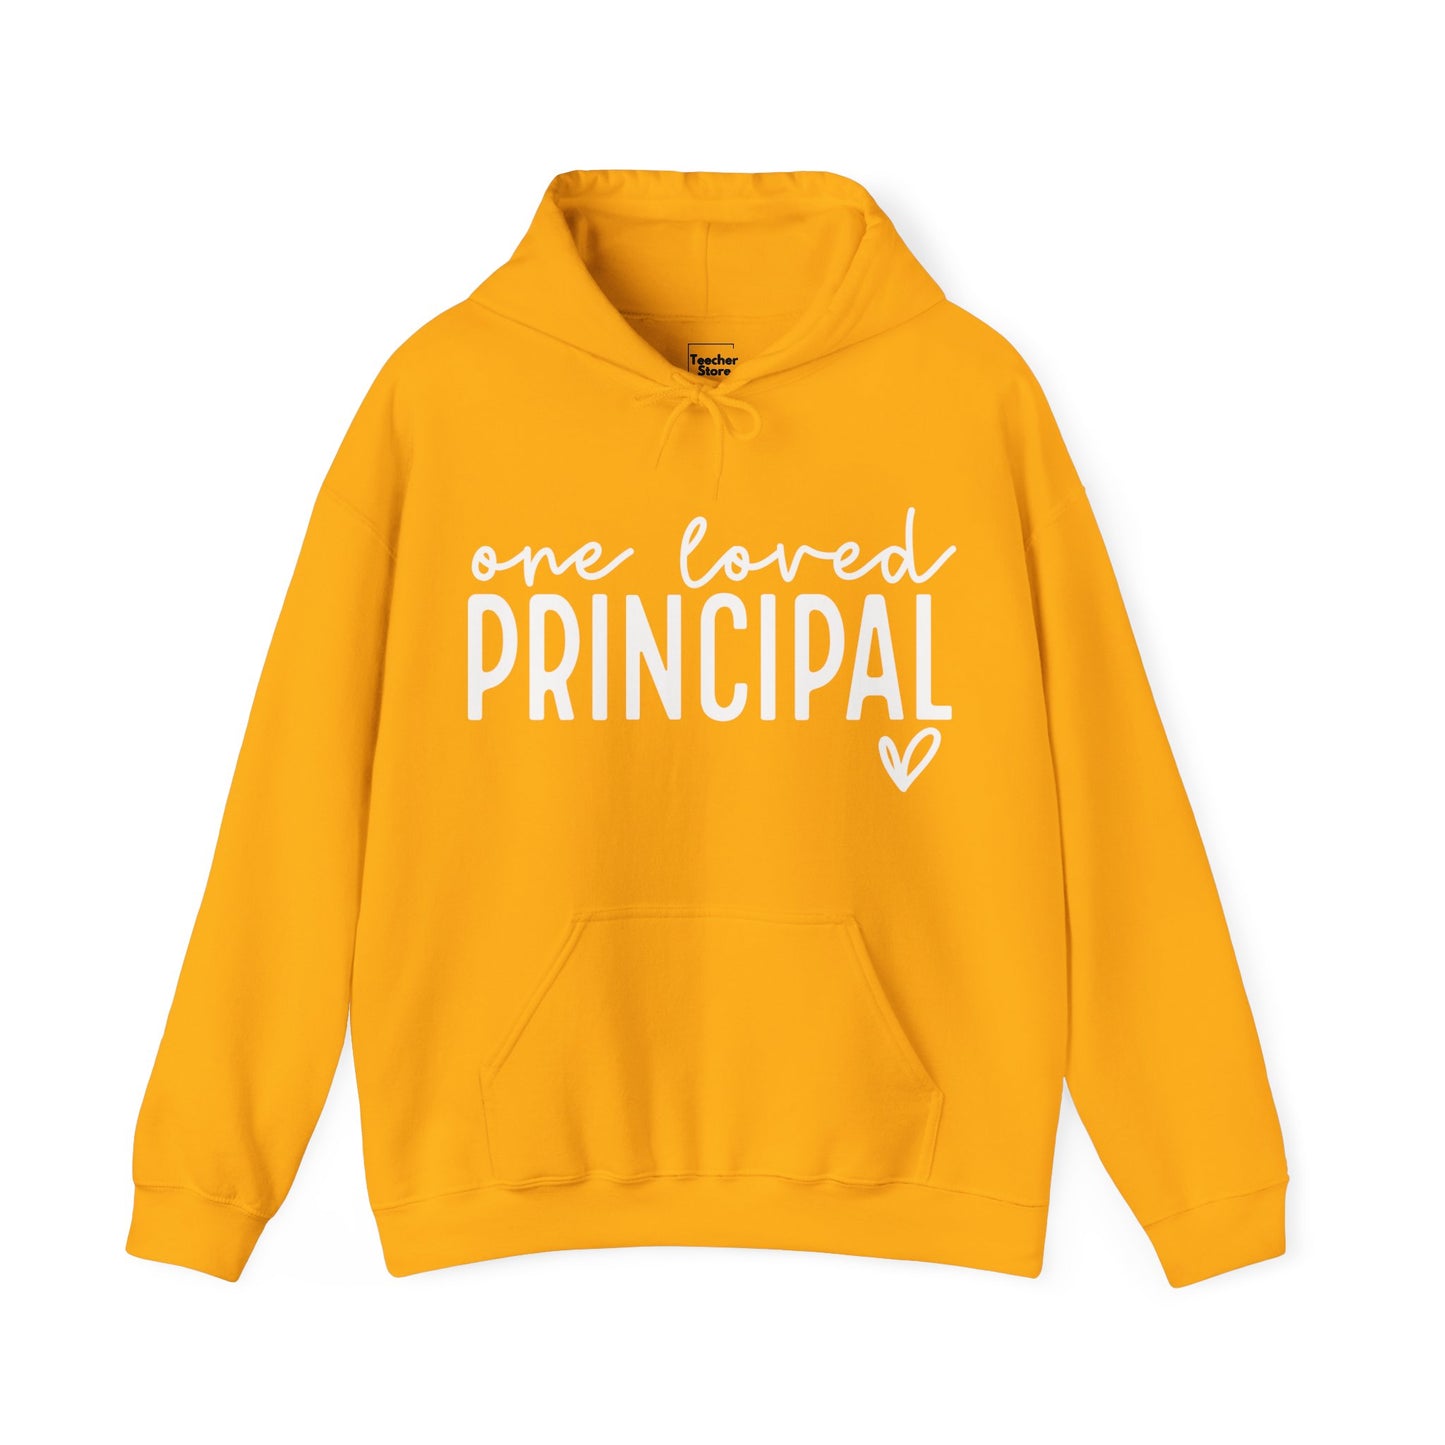 Loved Principal Hooded Sweatshirt